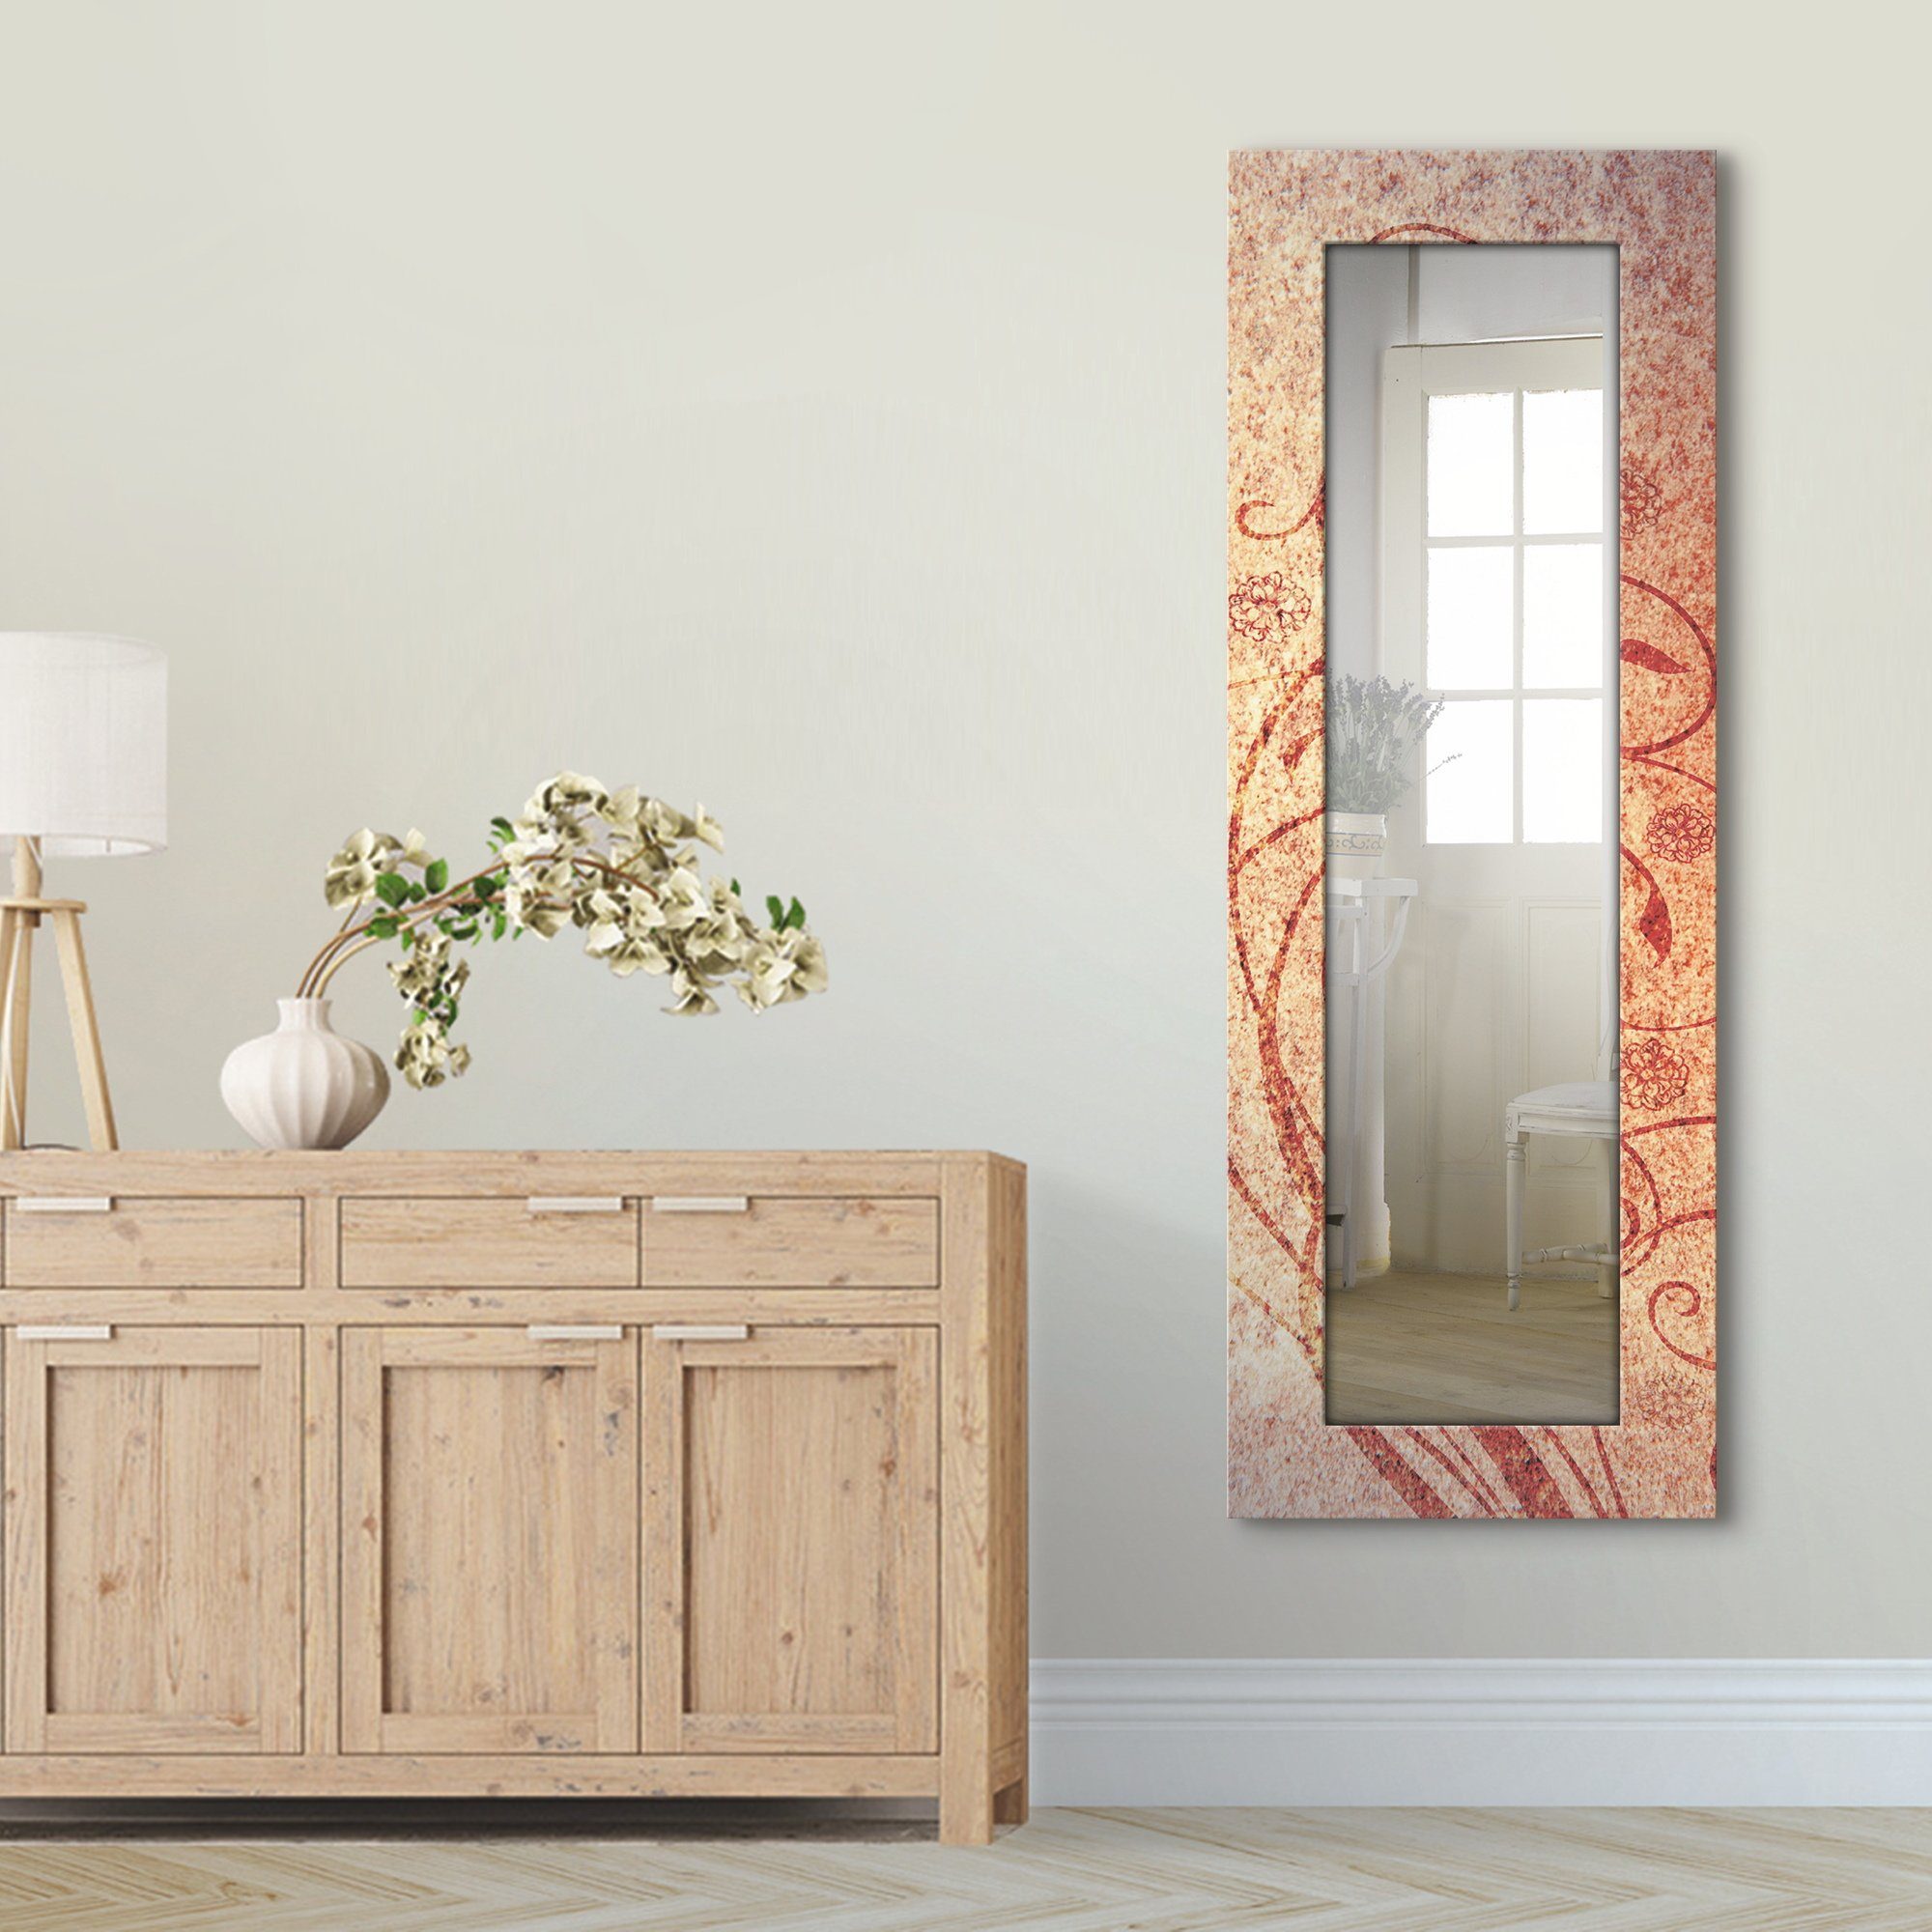 Artland Dekospiegel Florale Ornamente, gerahmter Ganzkörperspiegel, Wandspiegel, mit Motivrahmen, Landhaus